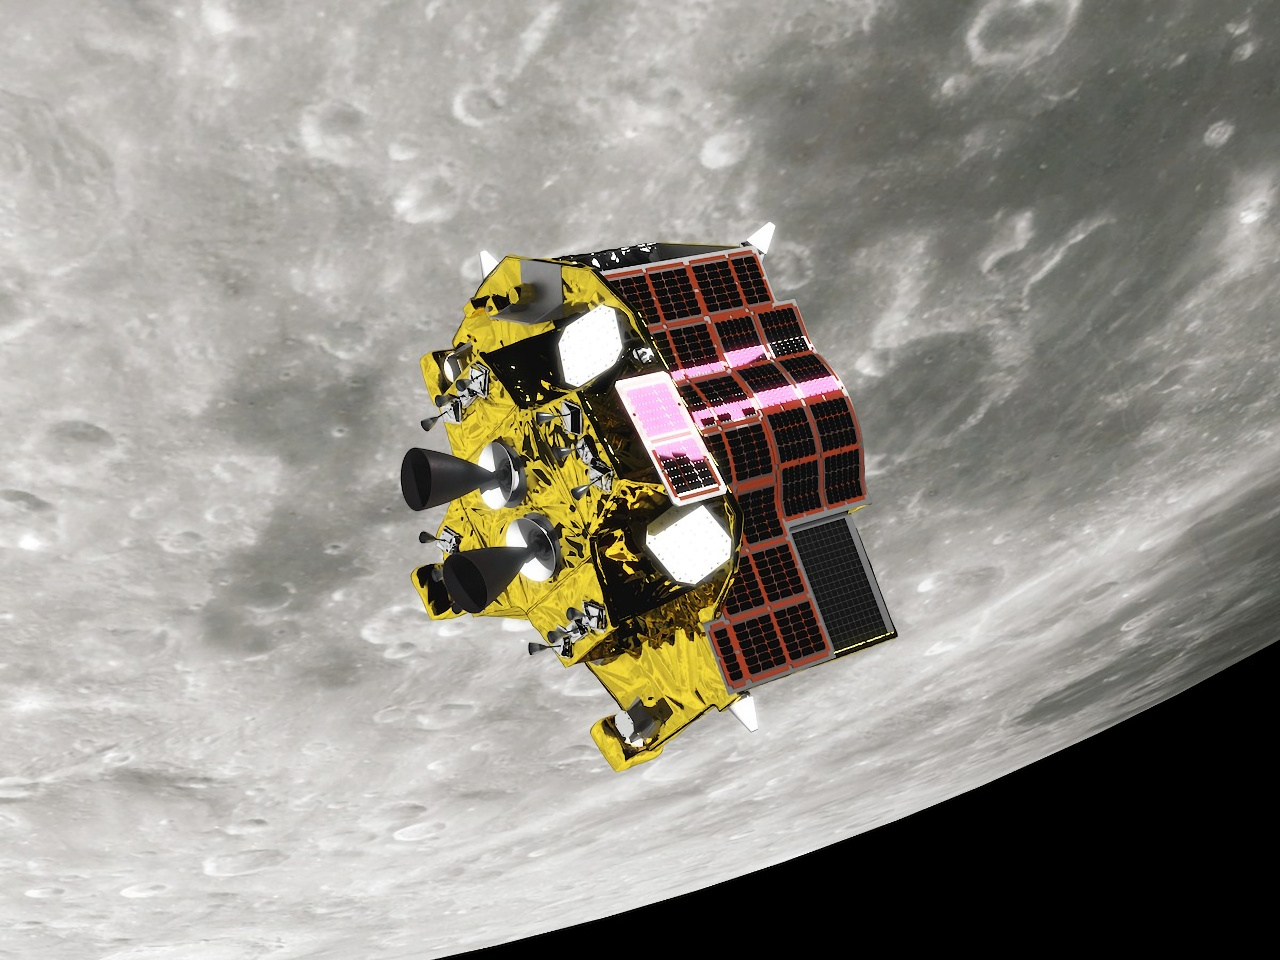 ピンポイント着陸目指す「SLIM」、月遷移軌道に--無事に軌道を変更